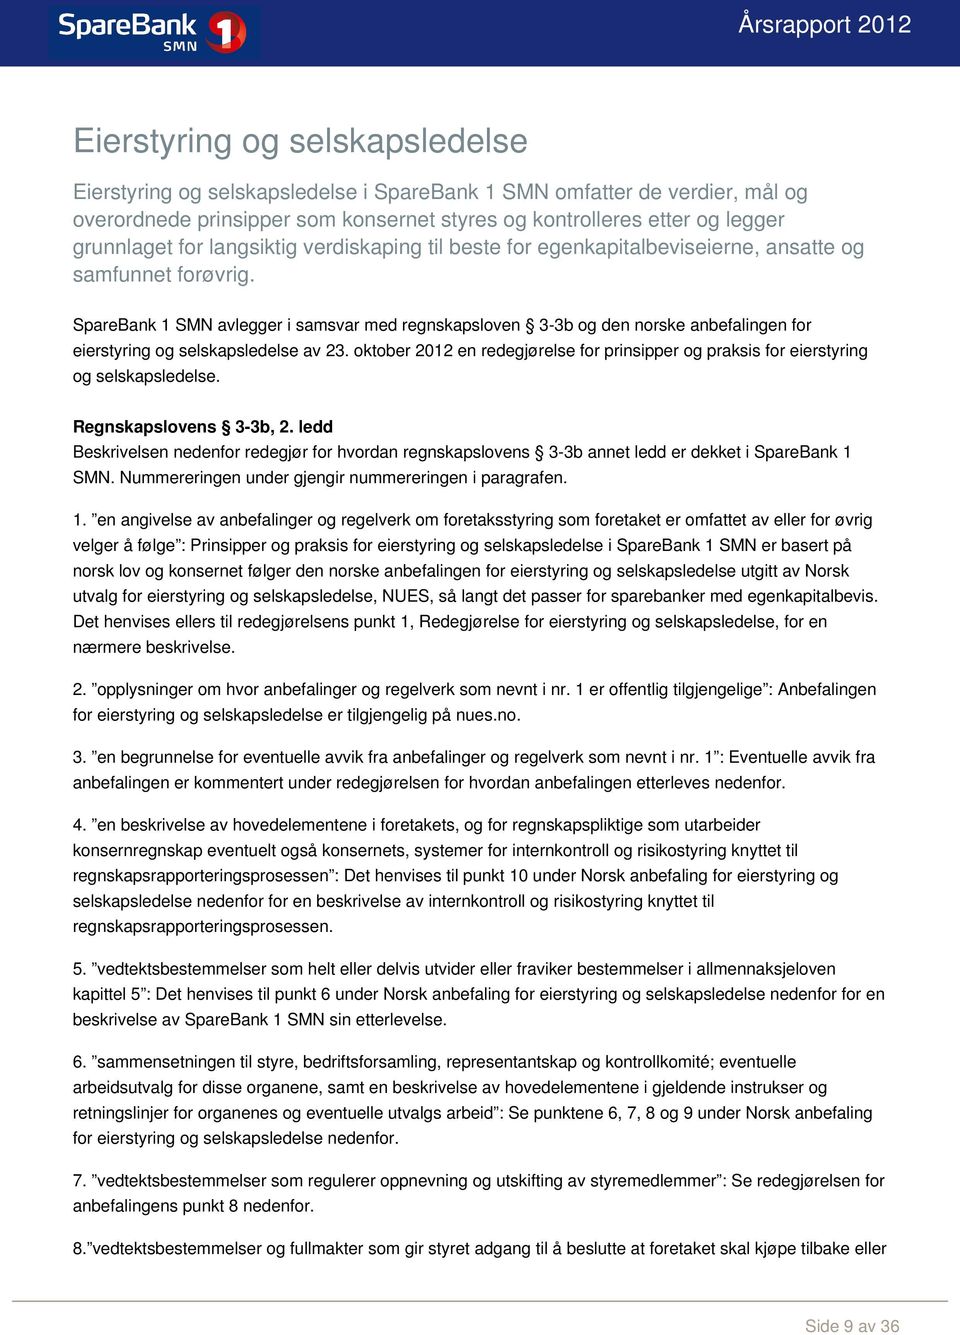 SpareBank 1 SMN avlegger i samsvar med regnskapsloven 3-3b og den norske anbefalingen for eierstyring og selskapsledelse av 23.